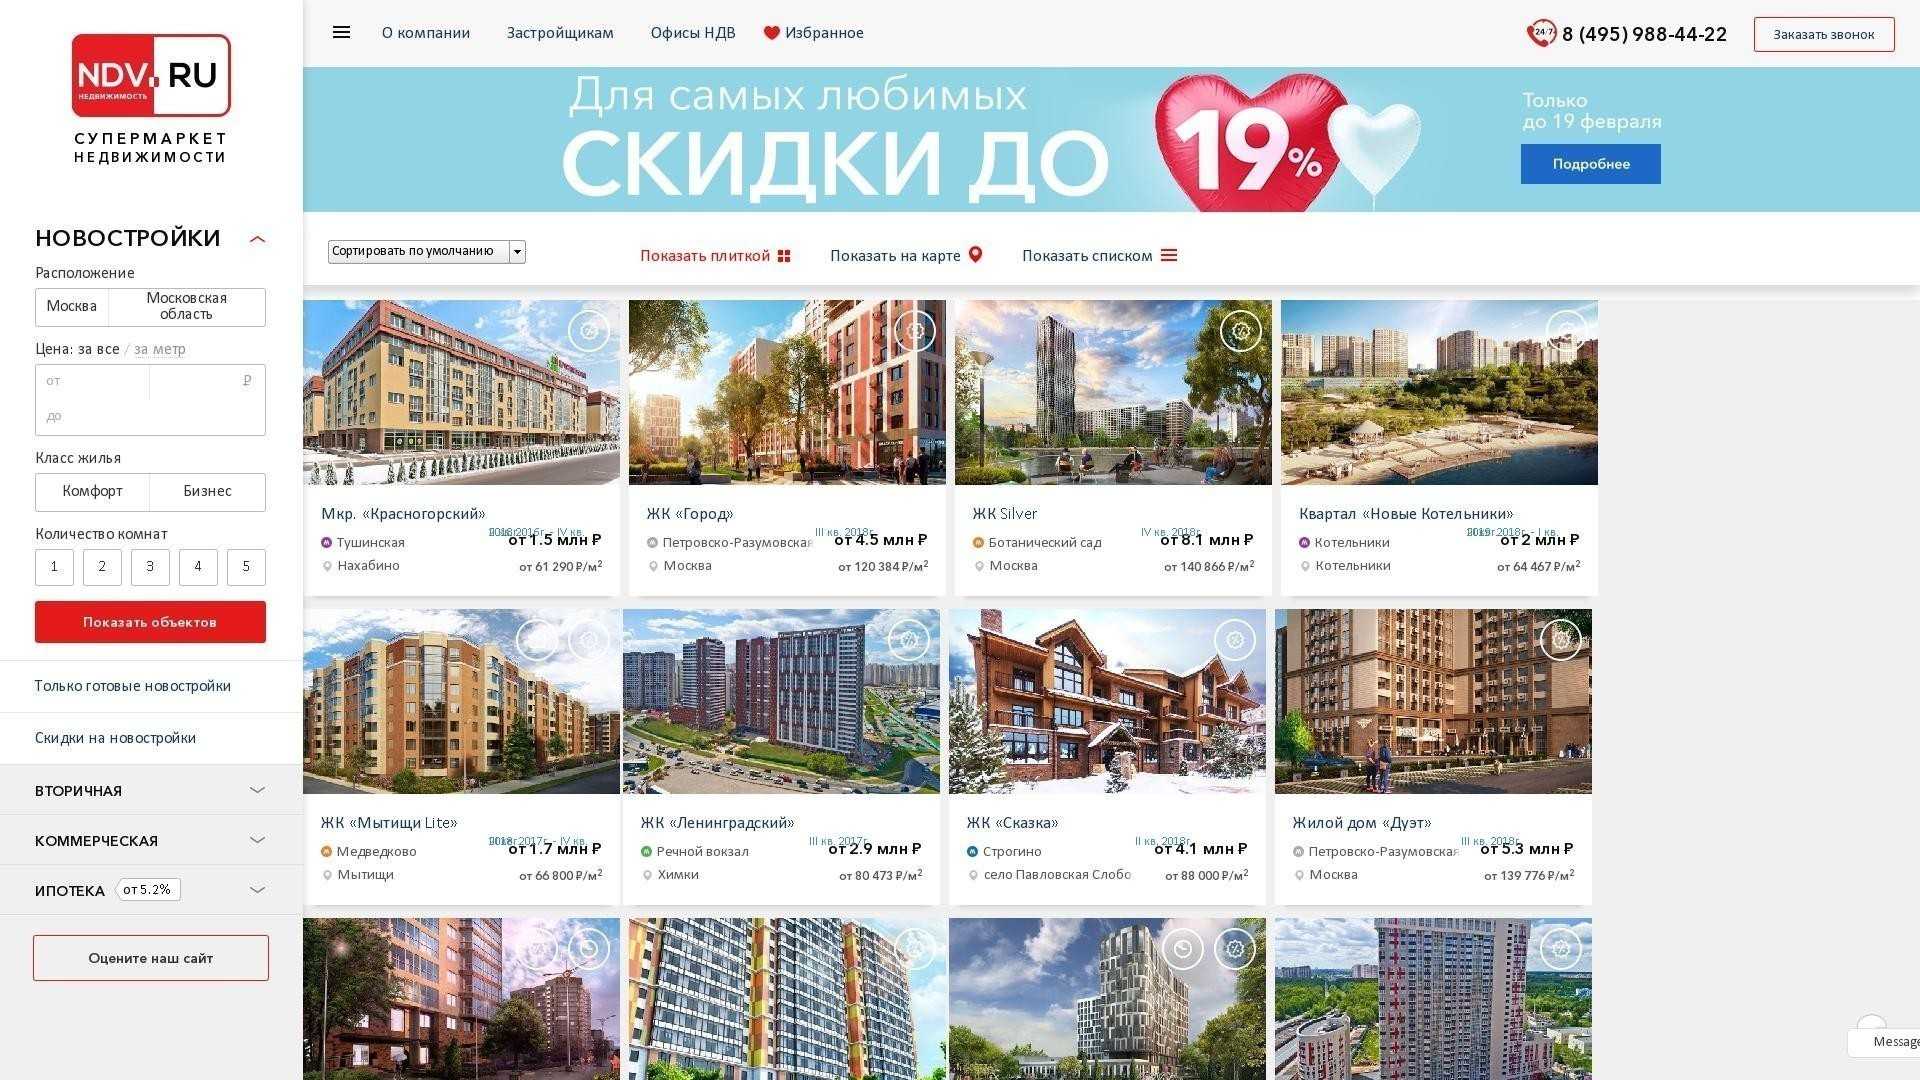 Сайт недвижимости с бесплатными объявлениями по продаже и покупке в россии - найдижилье.ру